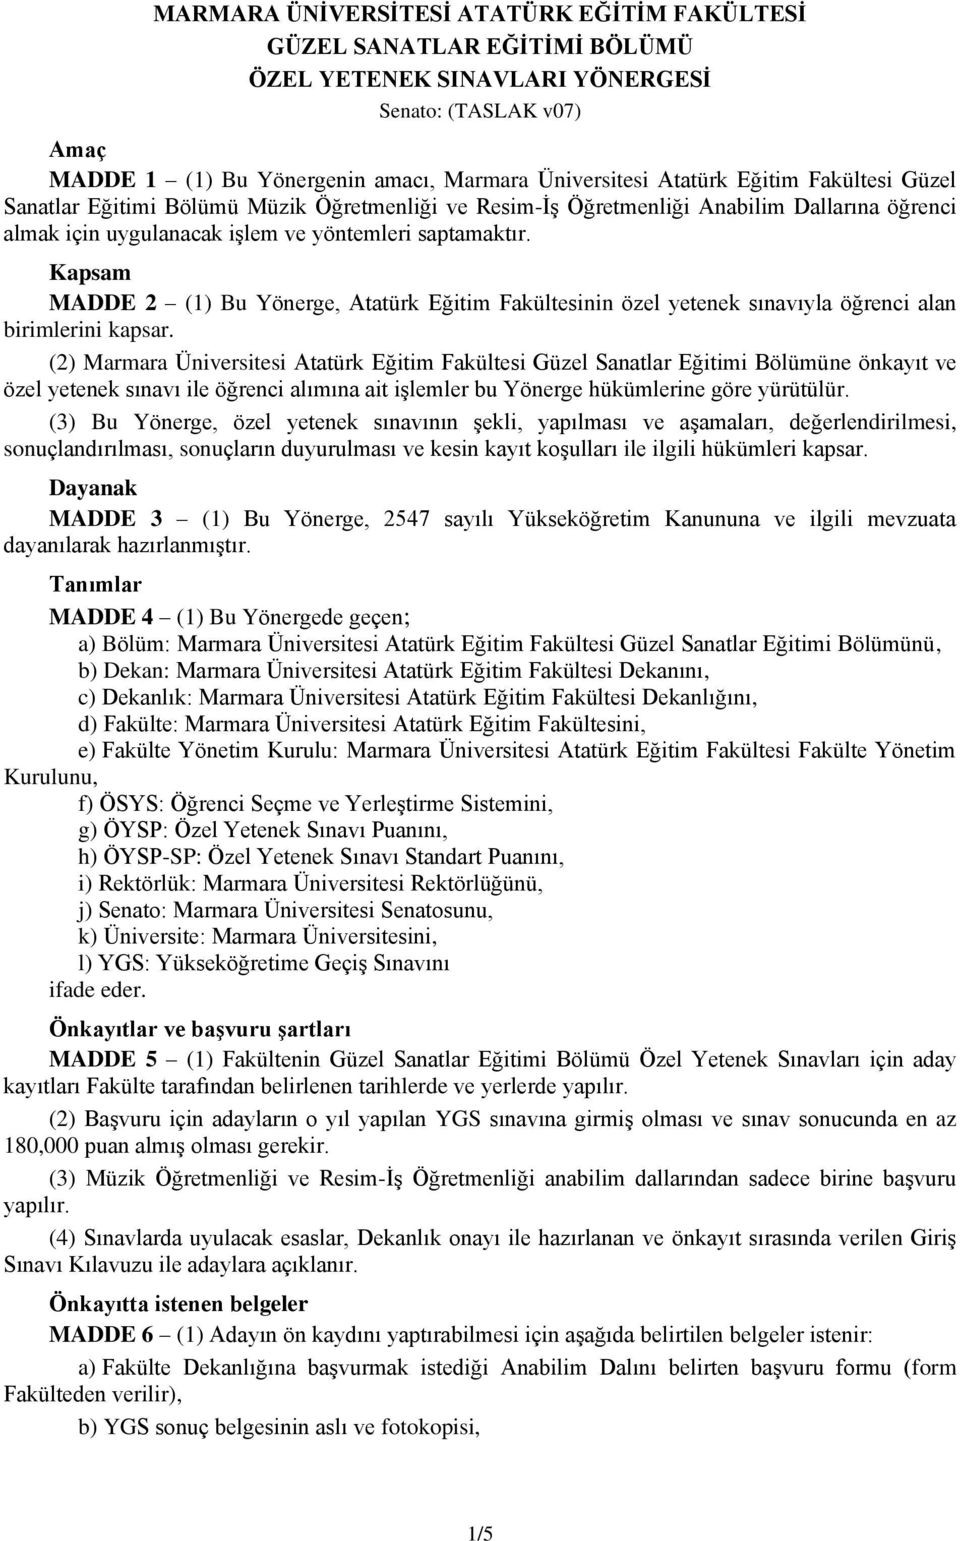 Kapsam MADDE 2 (1) Bu Yönerge, Atatürk Eğitim Fakültesinin özel yetenek sınavıyla öğrenci alan birimlerini kapsar.